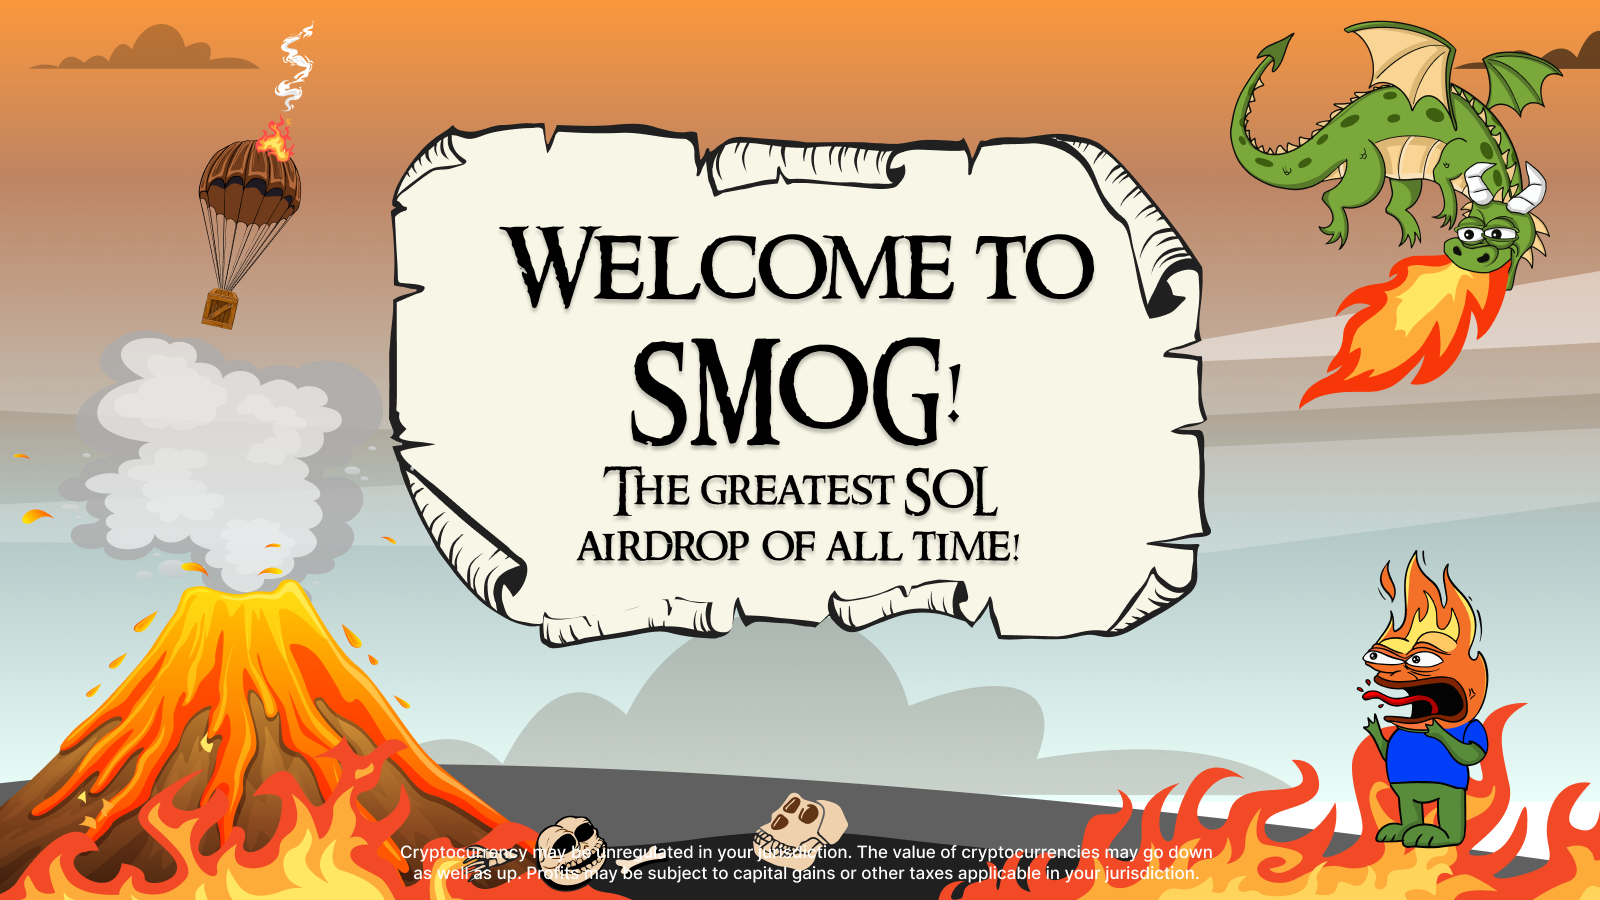 IDO de memecoin : smog